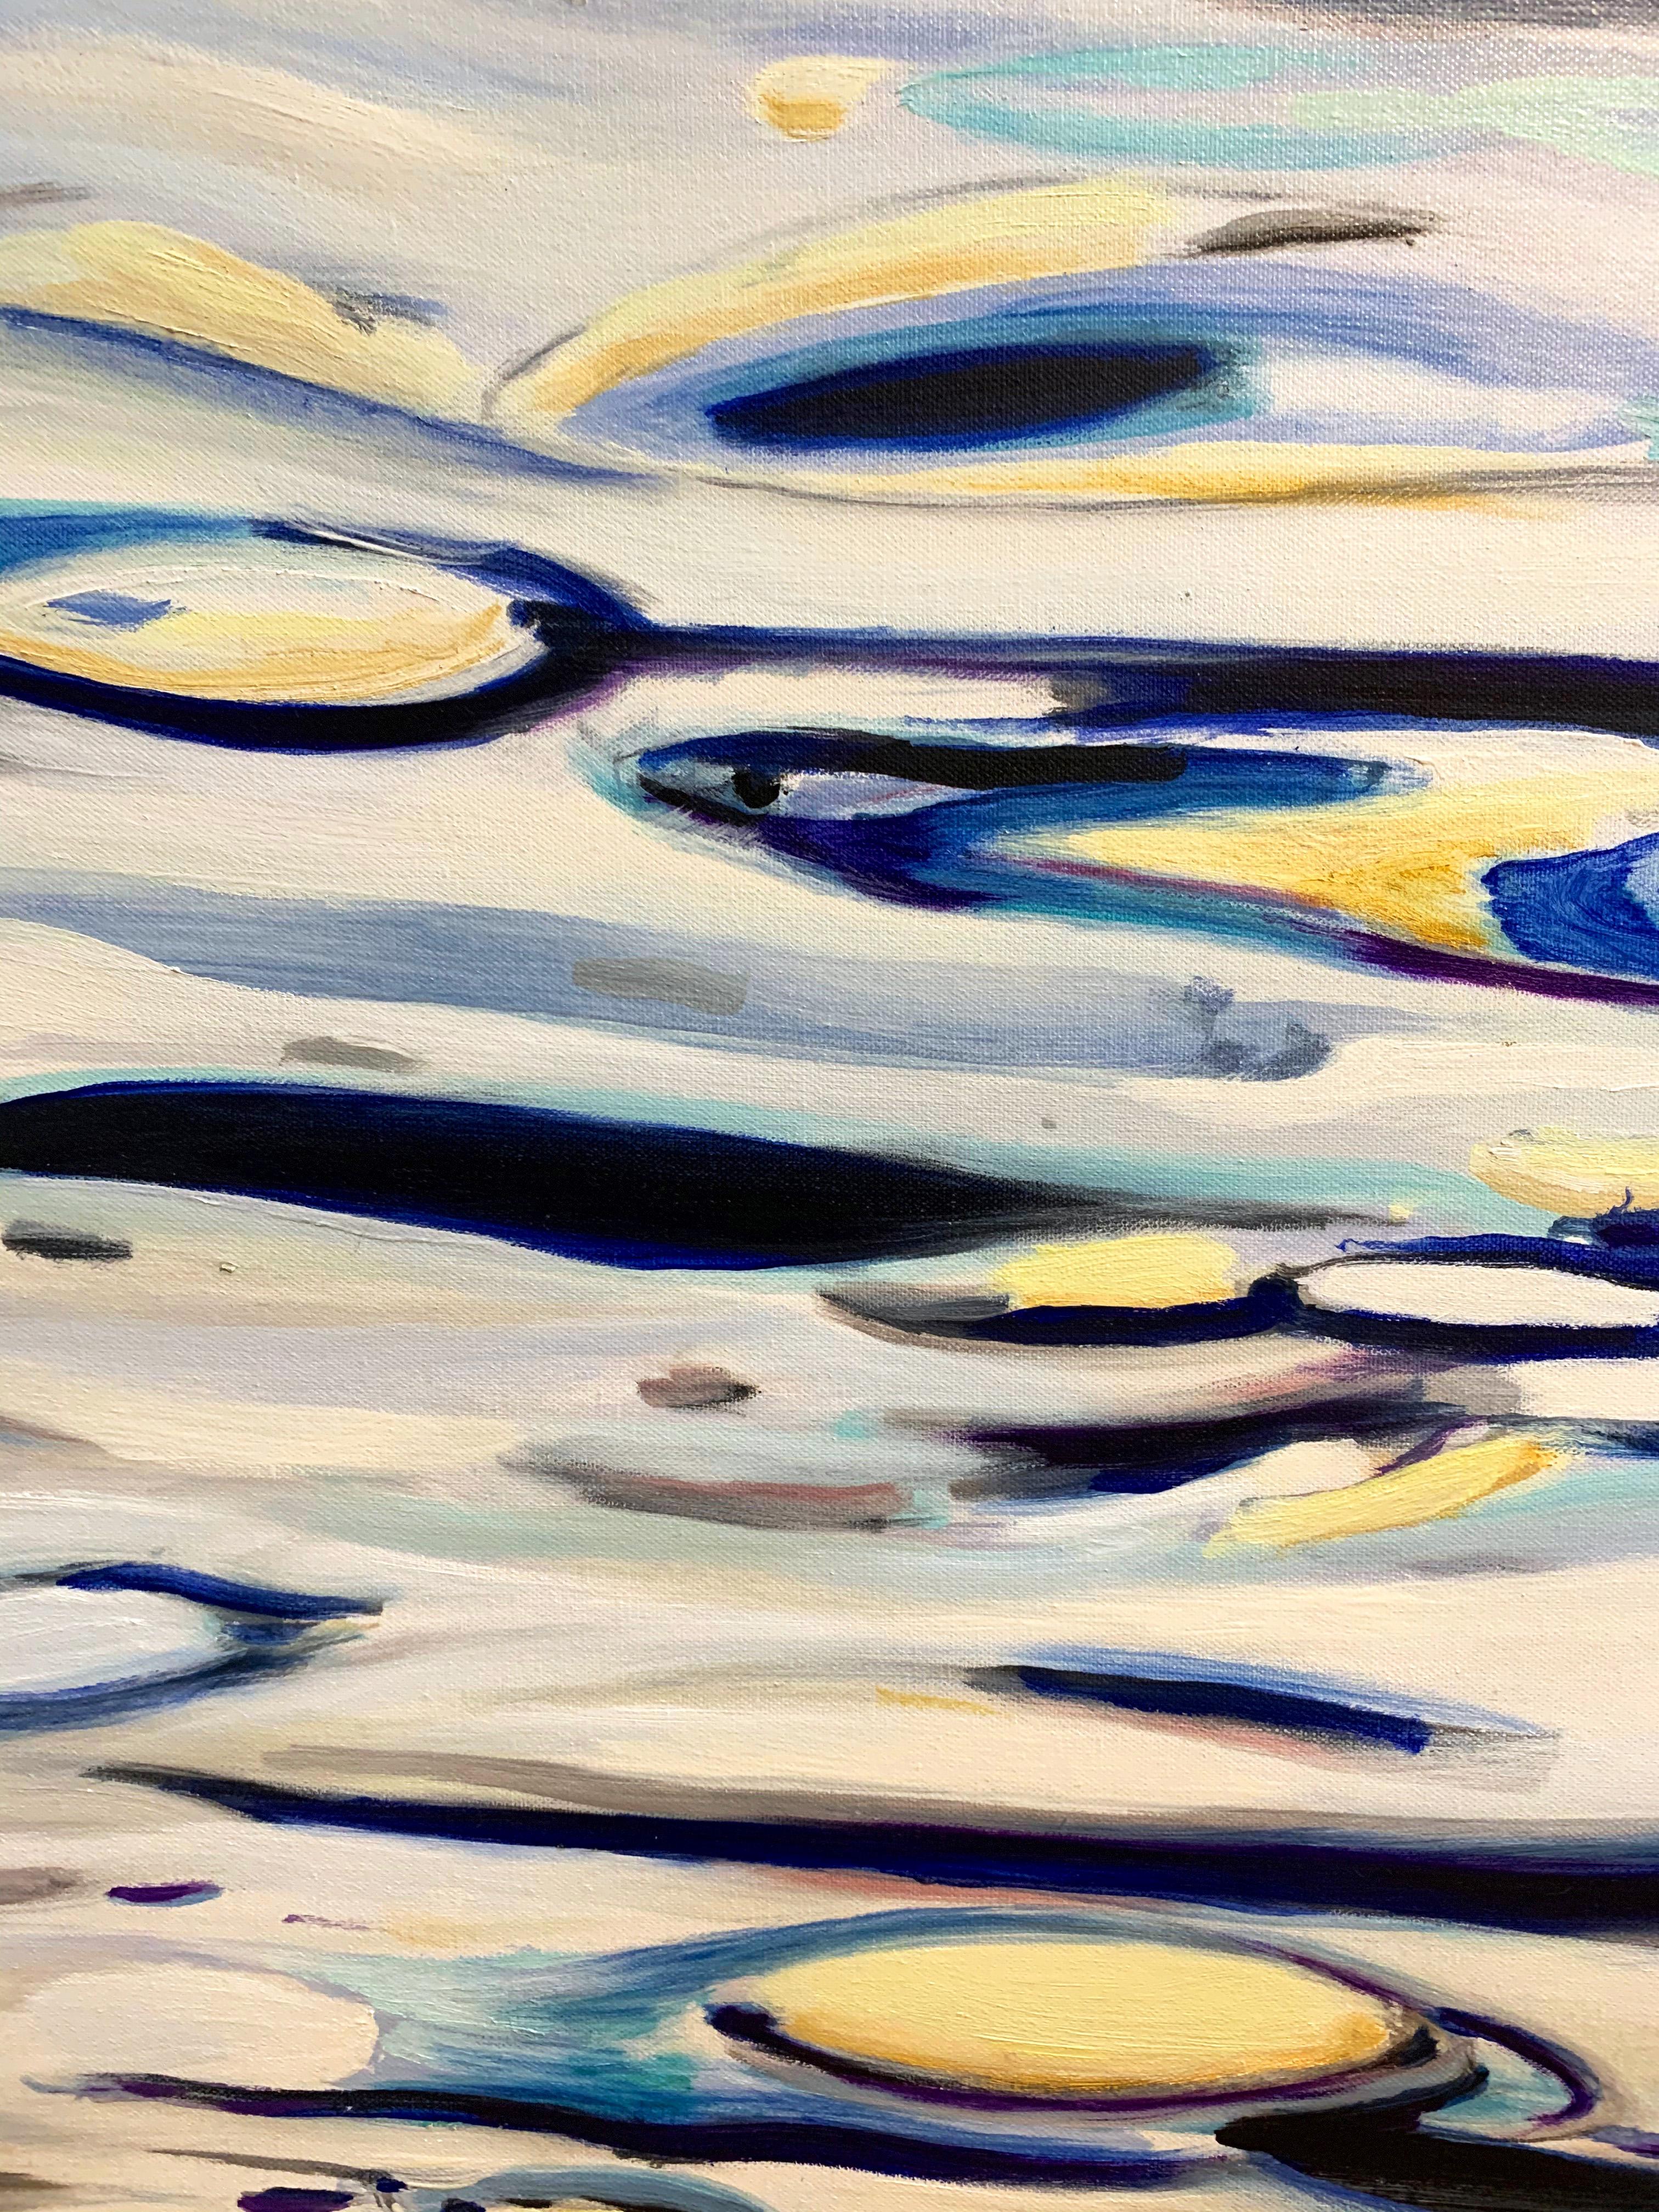 Miami River - bleus, blancs, jaunes  48 x 60 cm - Painting de Antonio Ugarte